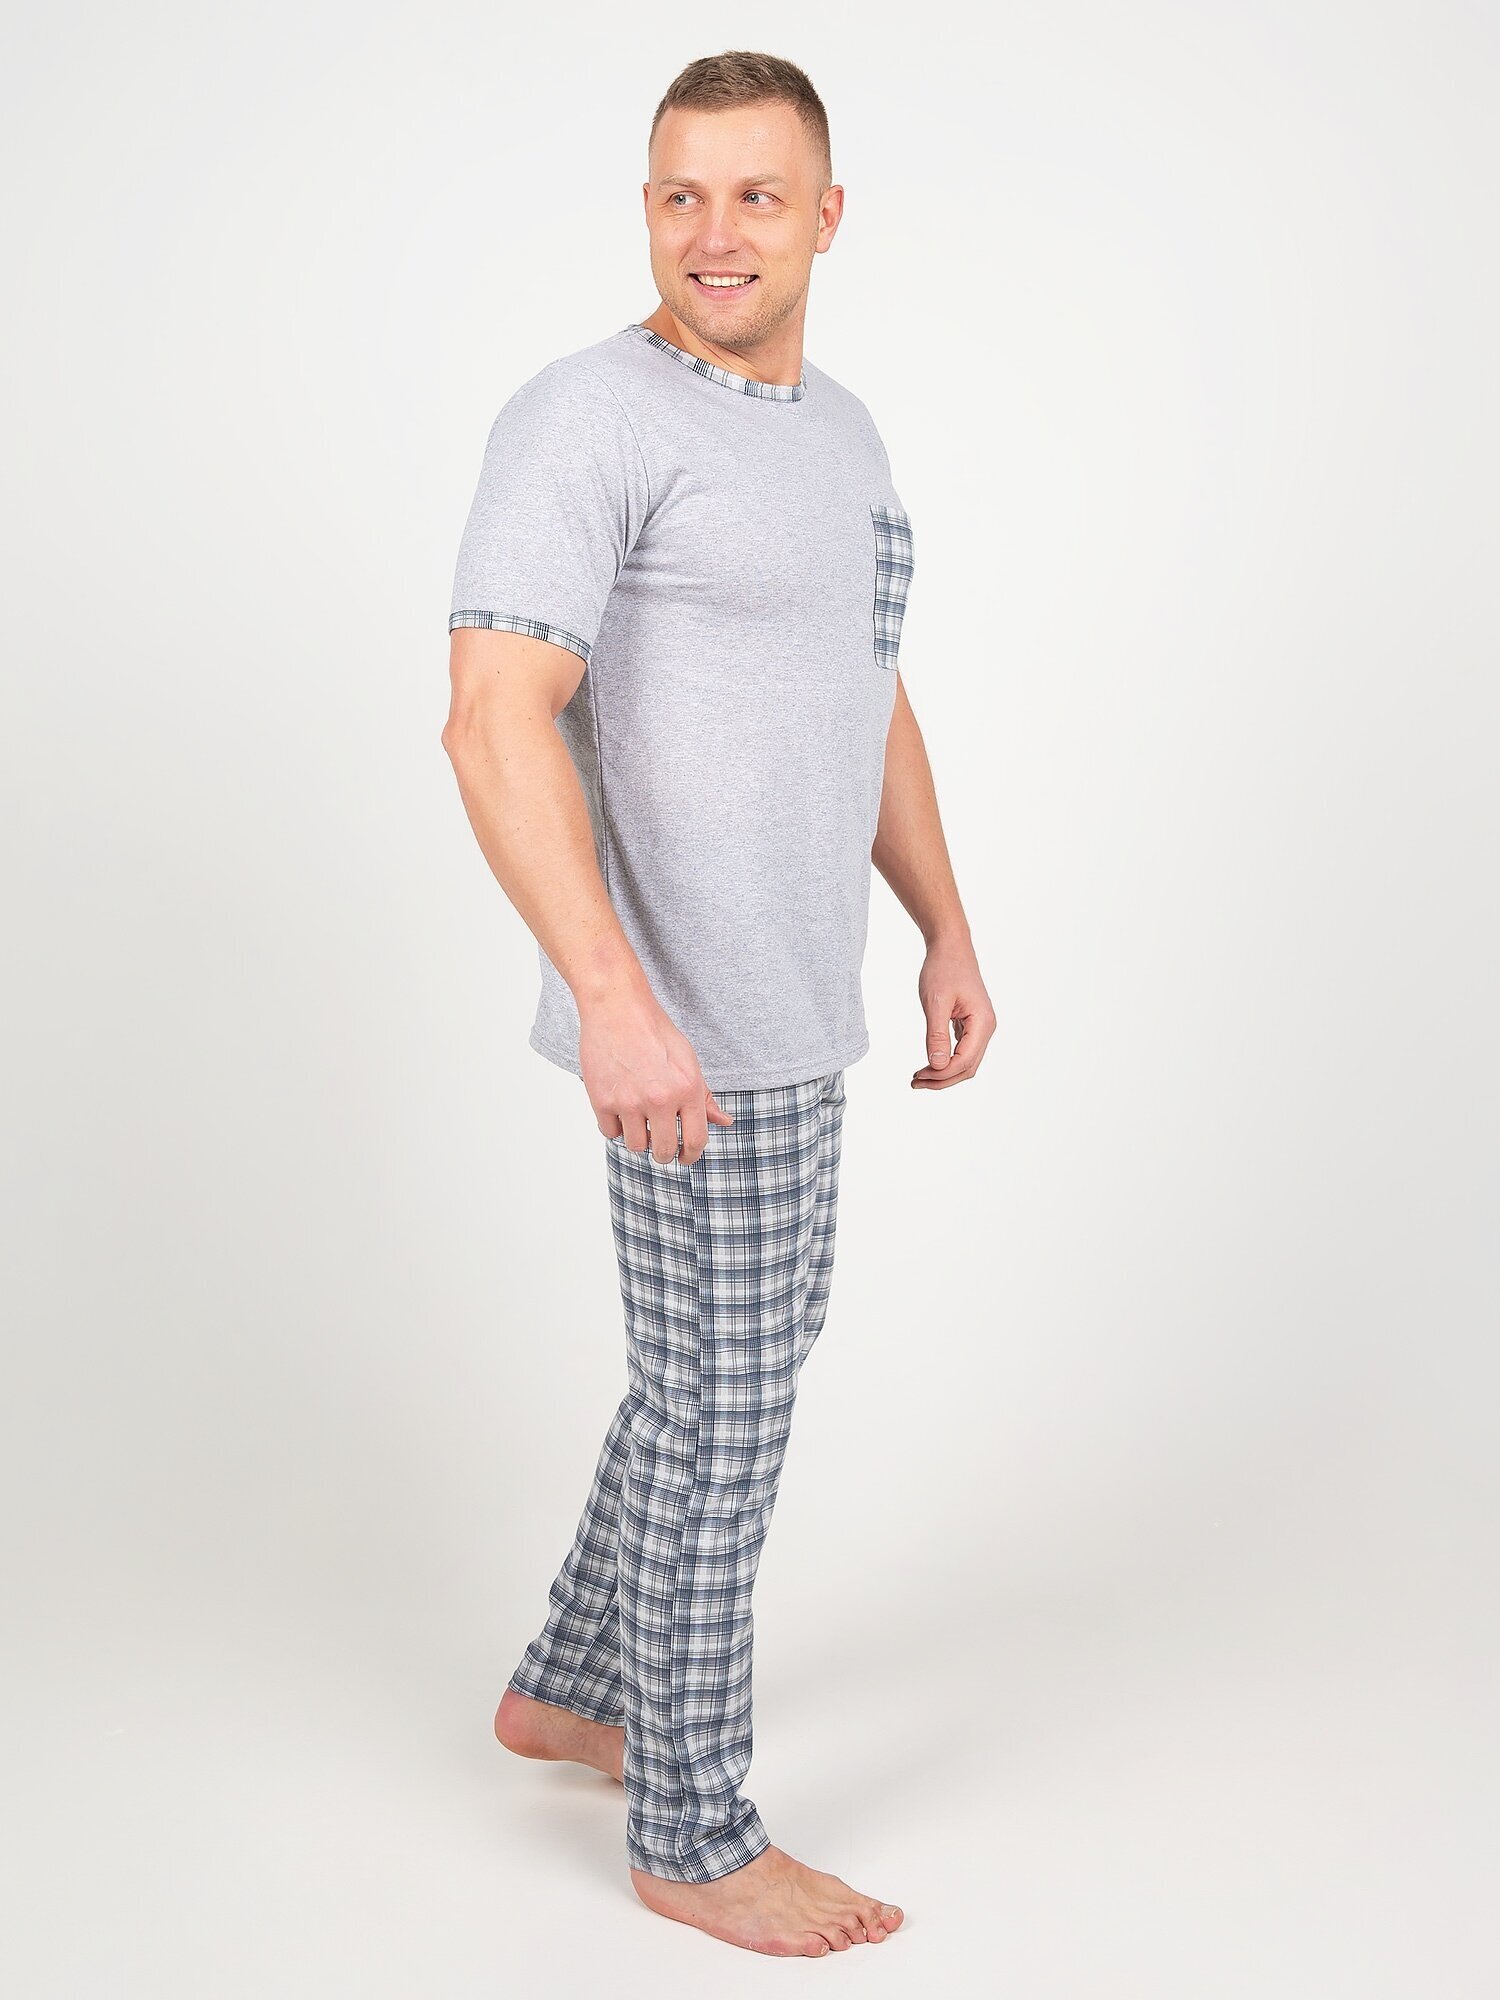 Пижама мужская, Ивелена, серая, 58 размер - фотография № 7